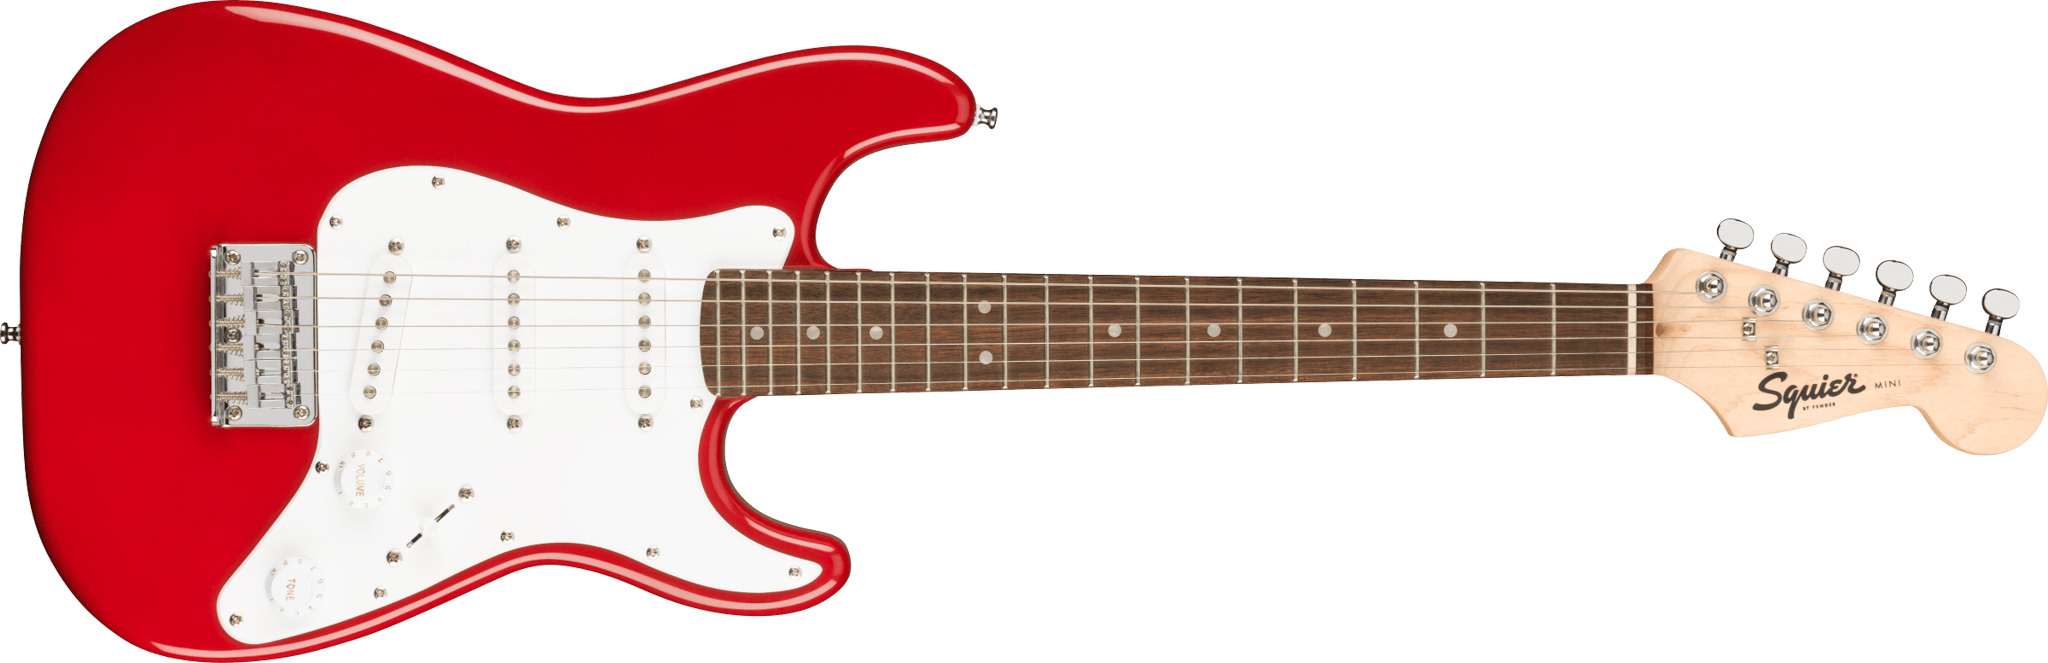 Se Fender Squier Mini Stratocaster El-guitar (Dakota Red) hos Drum City